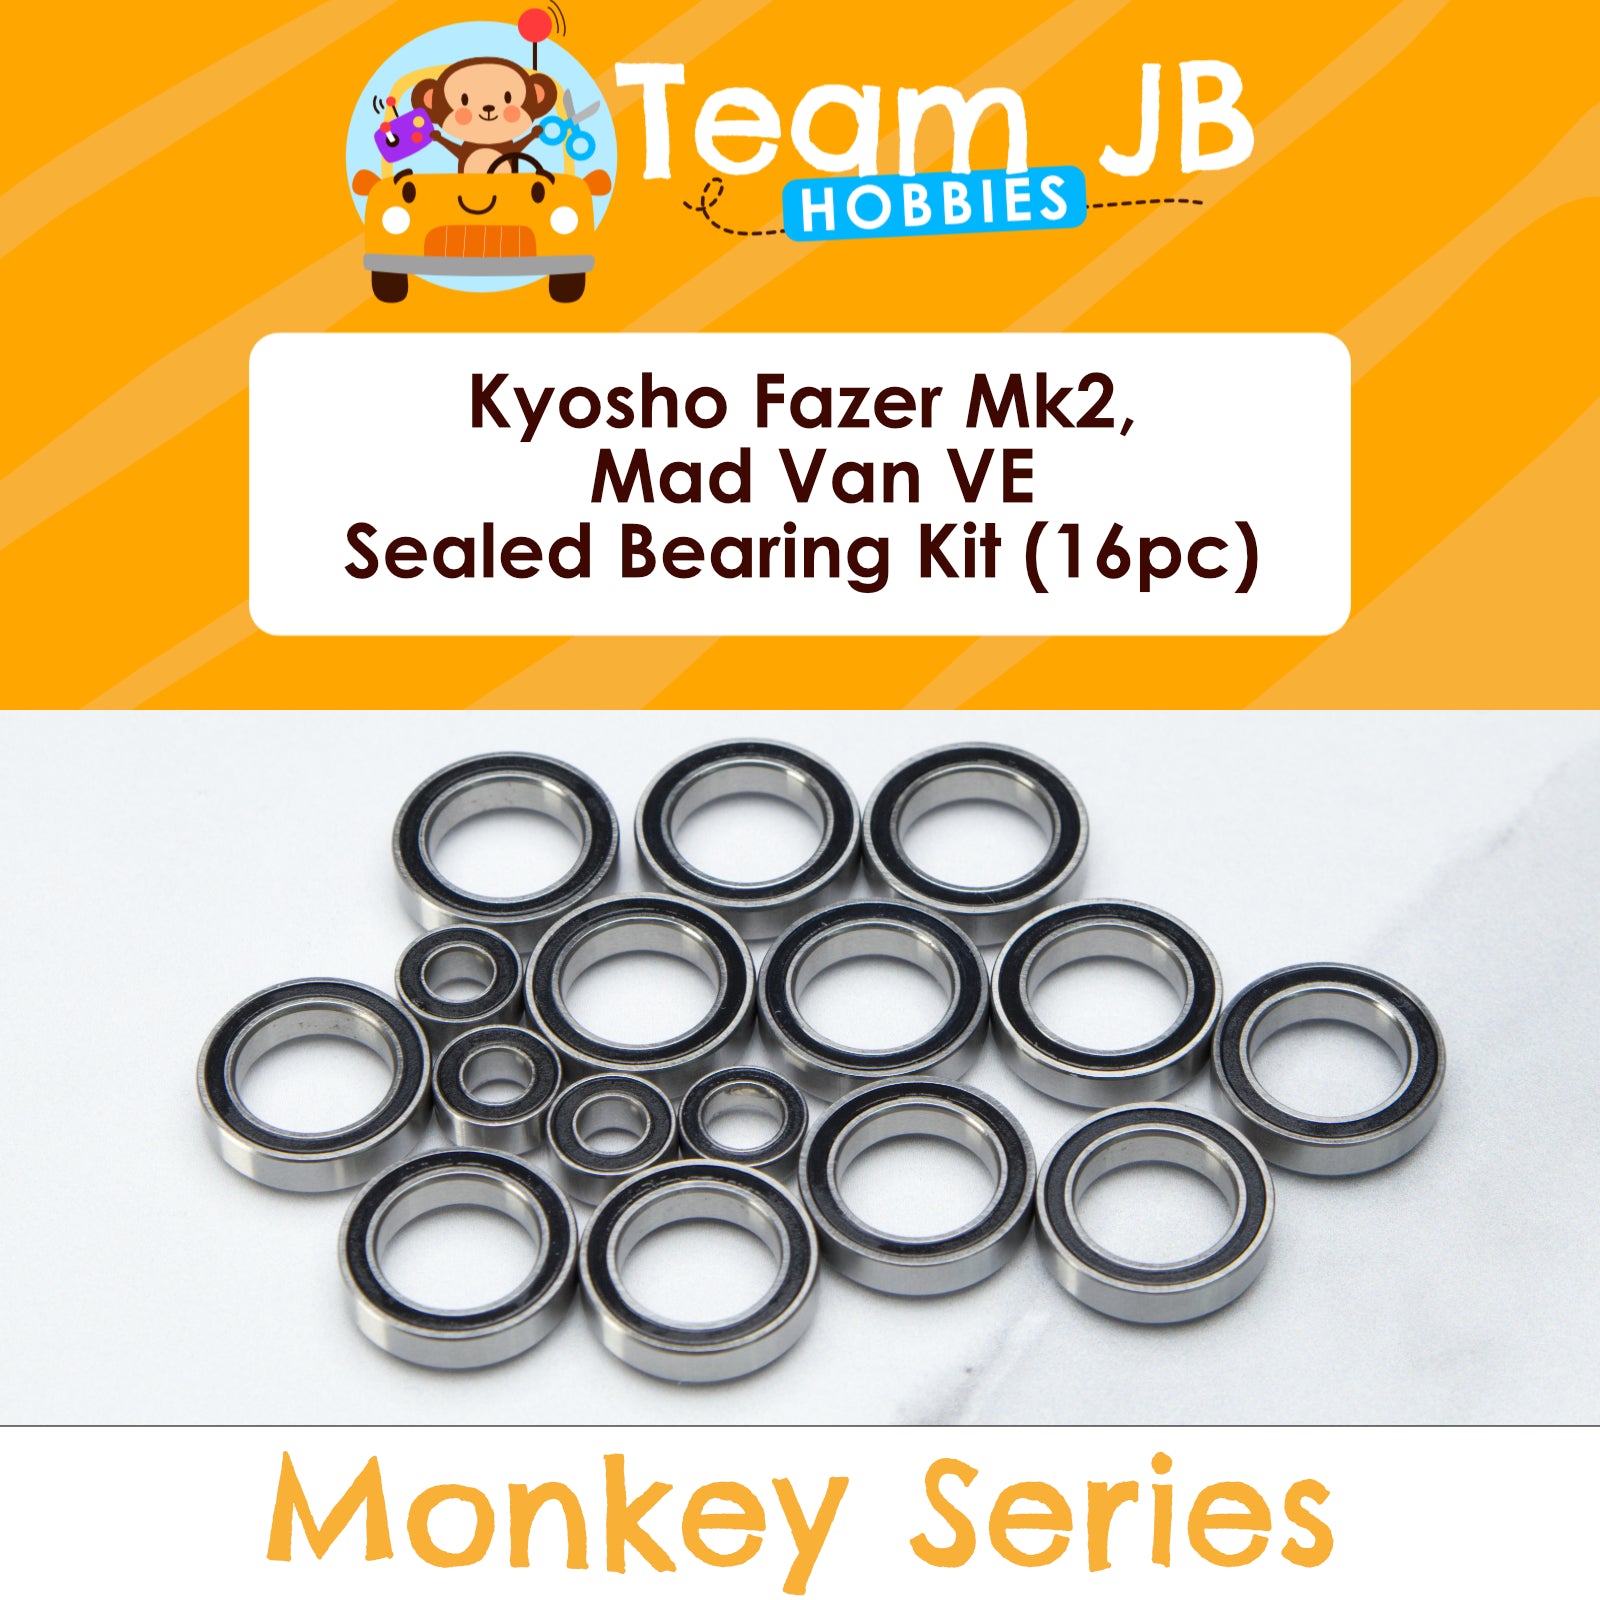 Kyosho Fazer Mk2, Mad Van VE - Sealed Bearing Kit